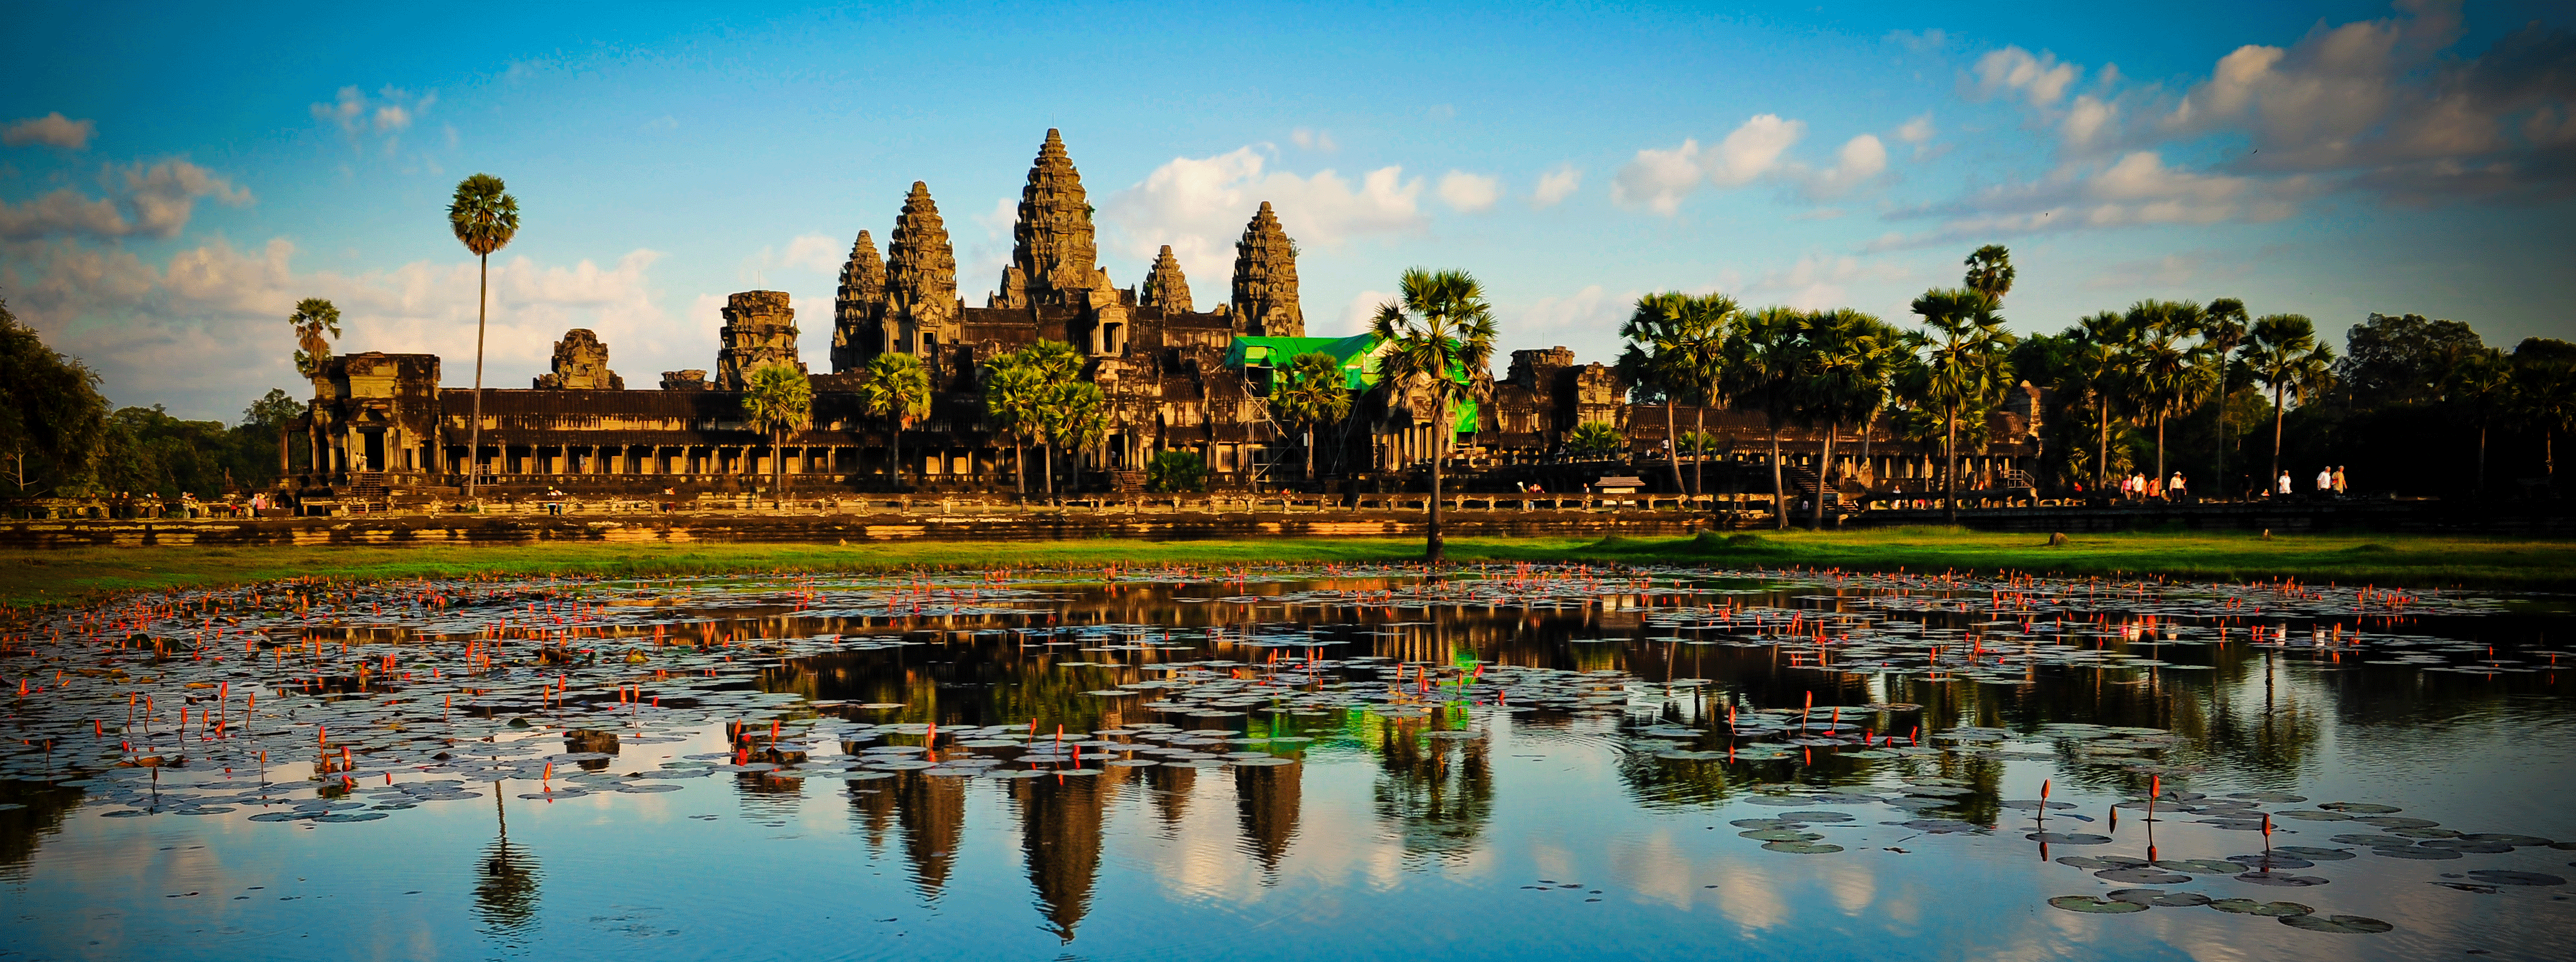 /resource/Images/Indochina/headerimage/Angkor-Wat-lake.png